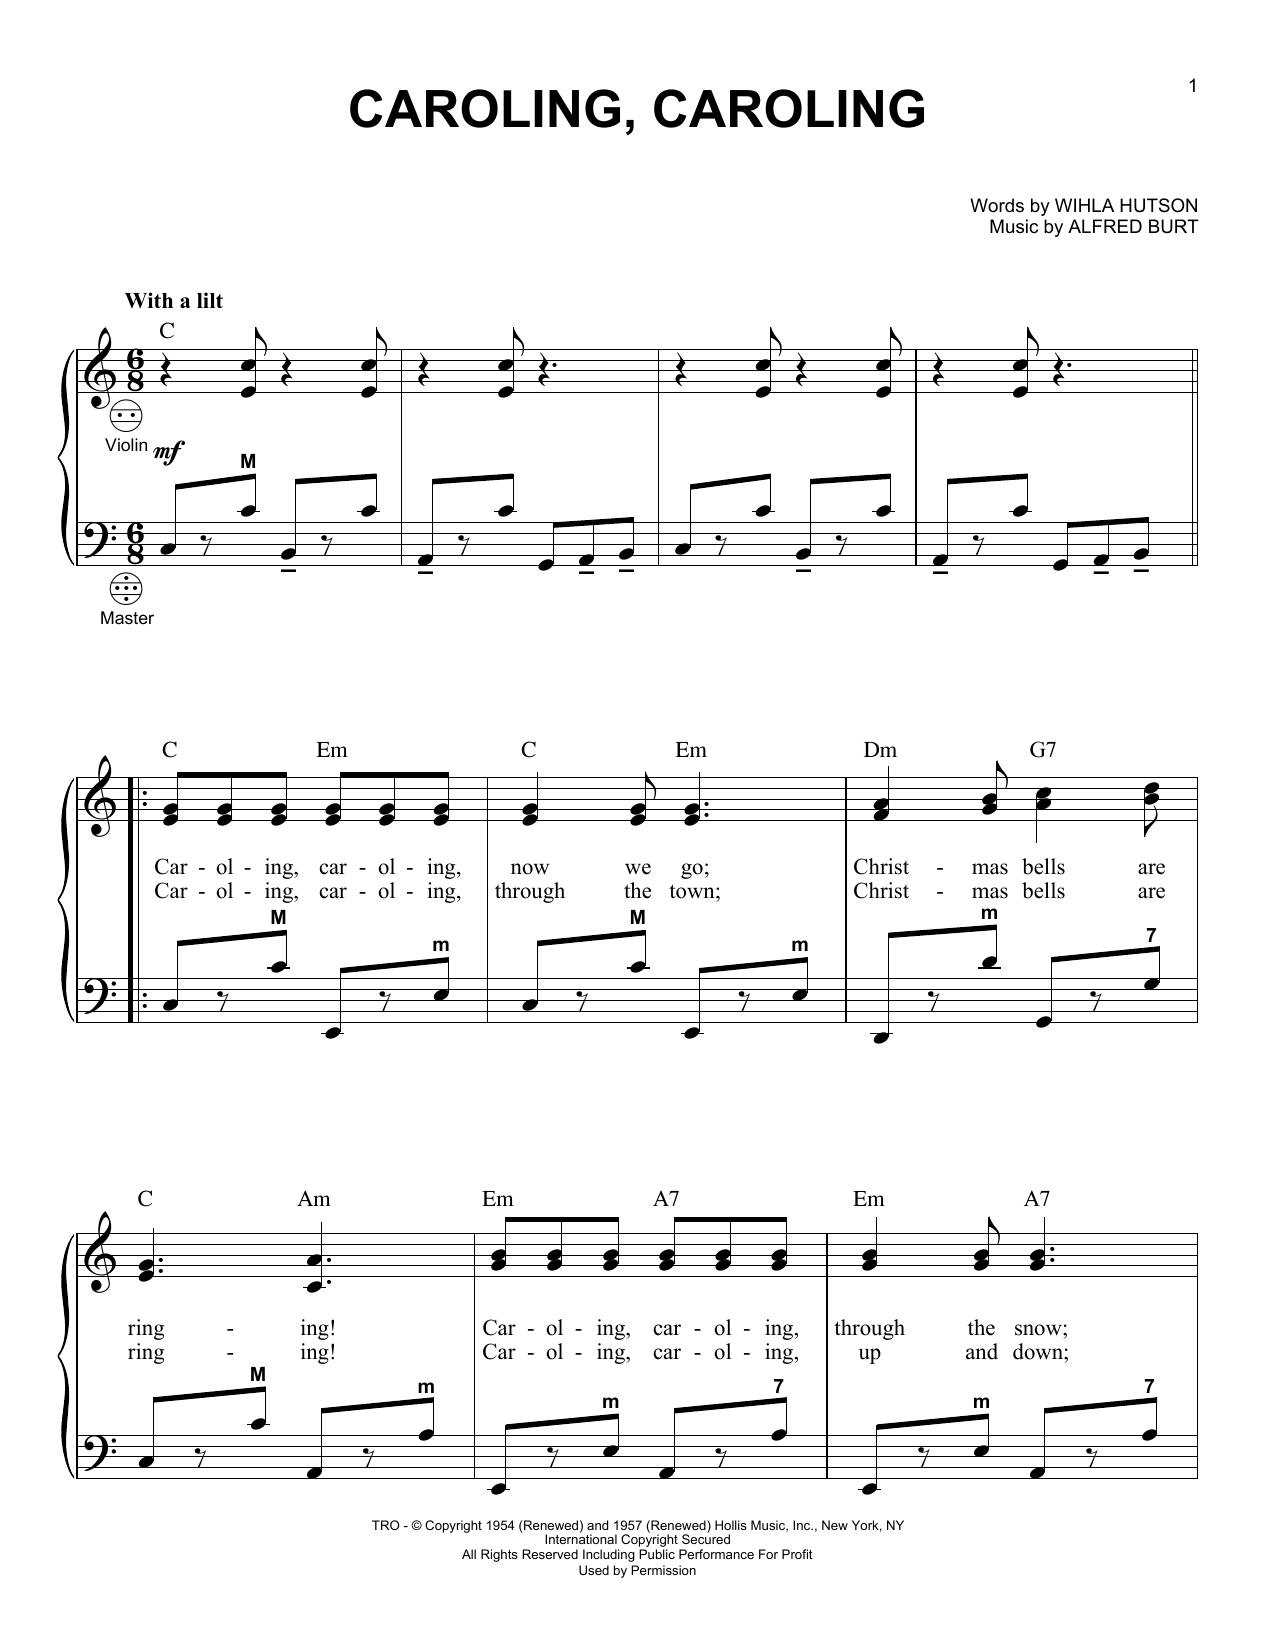 Alfred Burt Caroling, Caroling Sheet Music Notes & Chords for Guitar Lead Sheet - Download or Print PDF